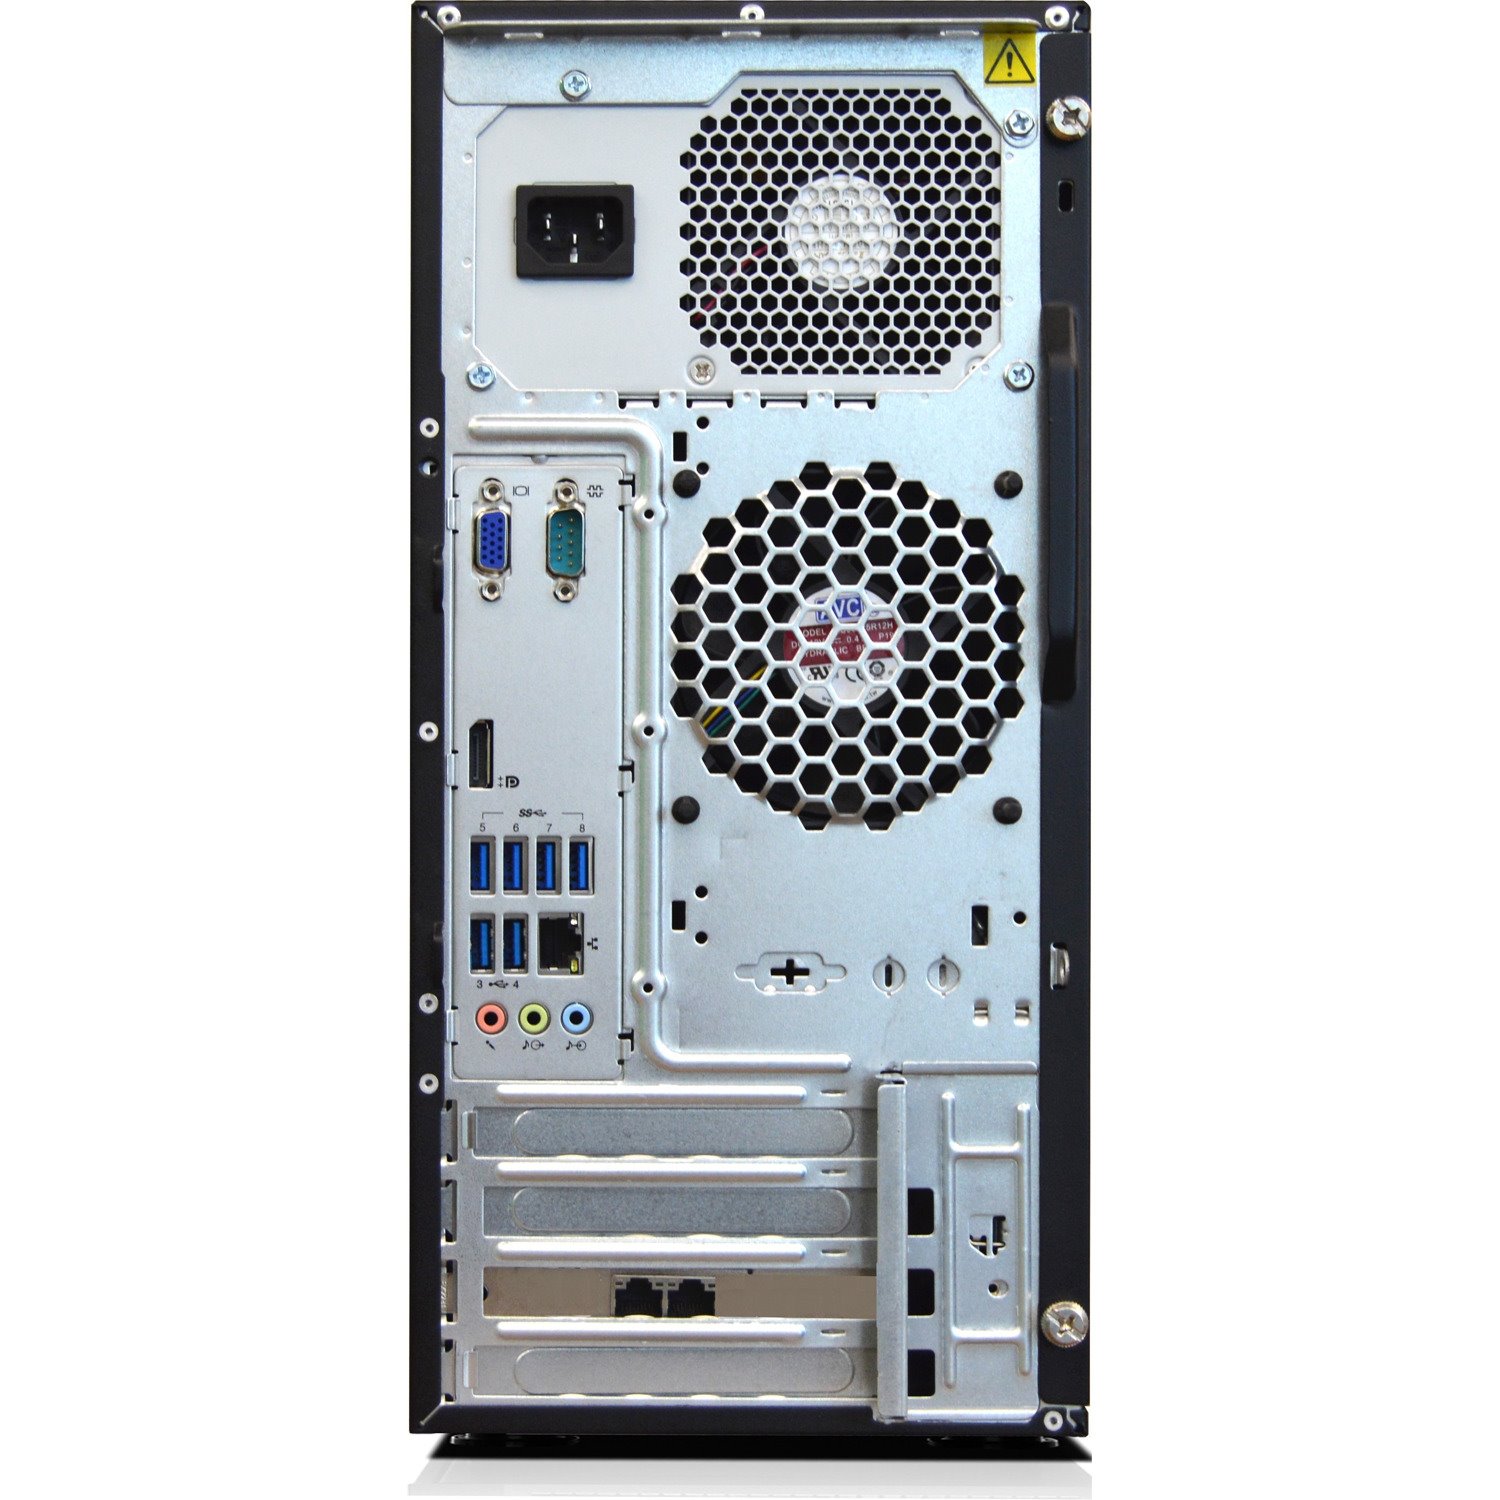 Lenovo ThinkServer TS150 70UD000UAZ 4U Tower Server - 1 x Intel Xeon E3-1225 v6 3.30 GHz - 8 GB RAM - Serial ATA/600 Controller